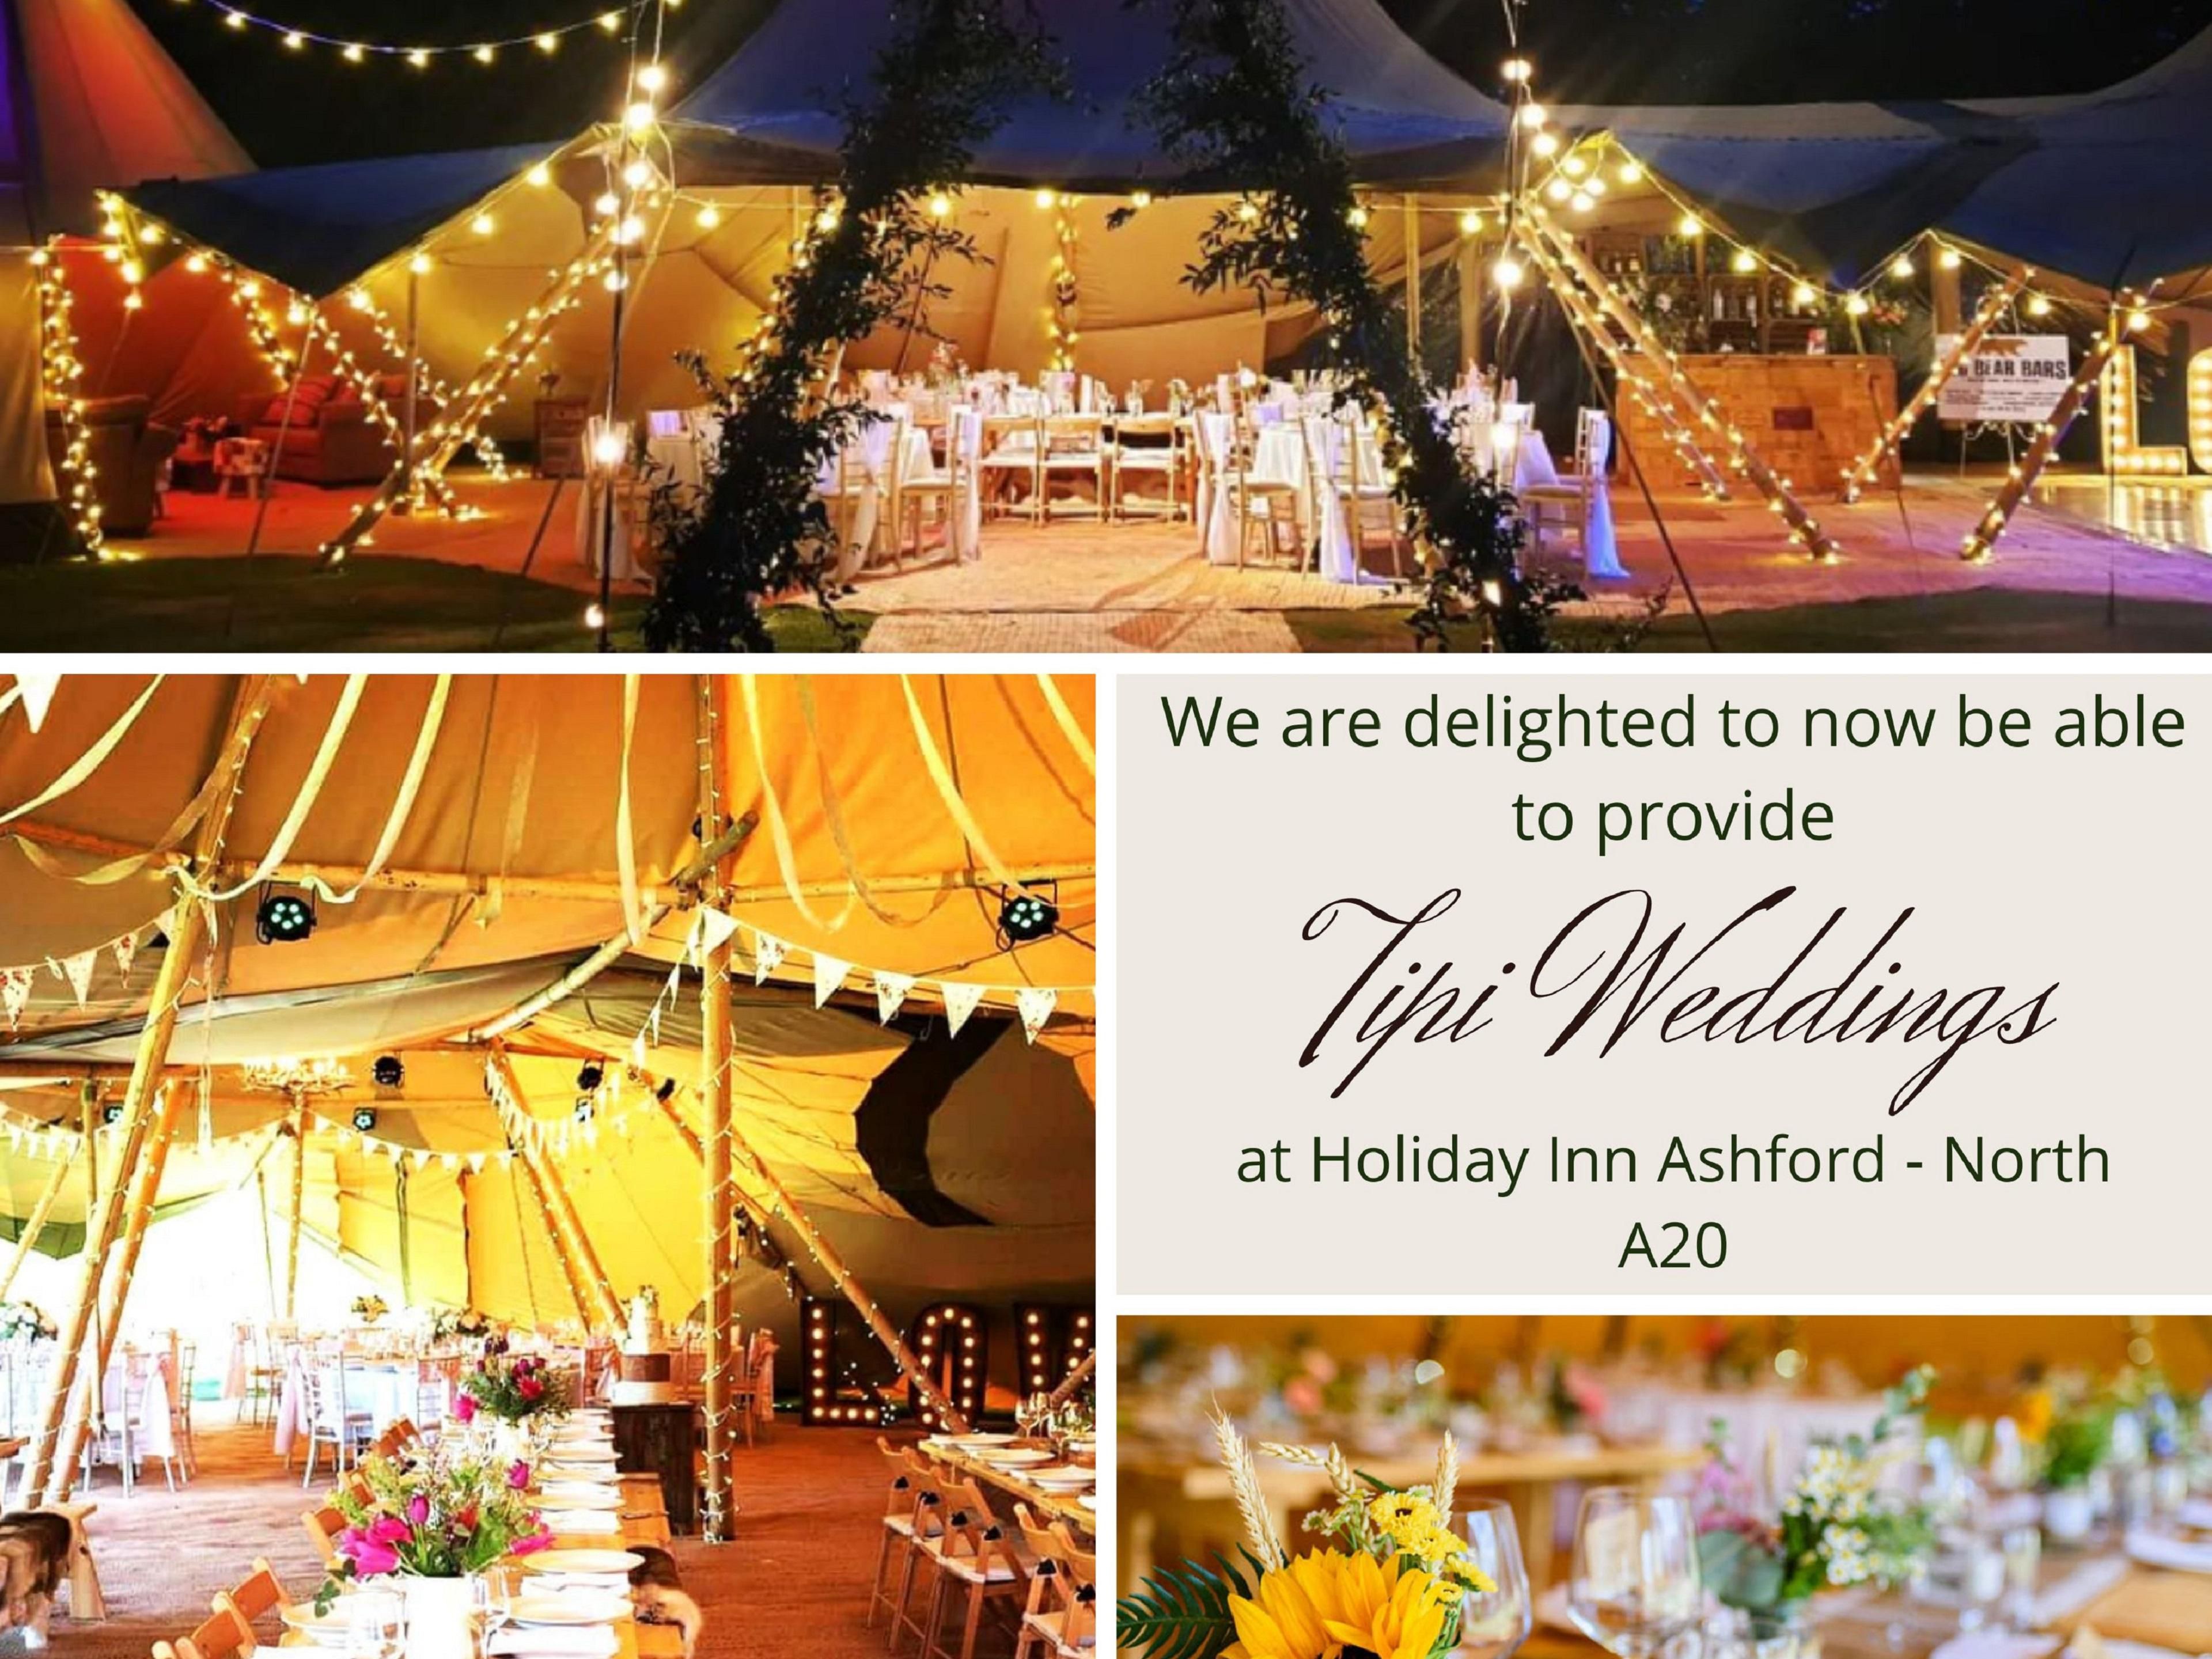 Grand Tipi Events & Tipi Weddings